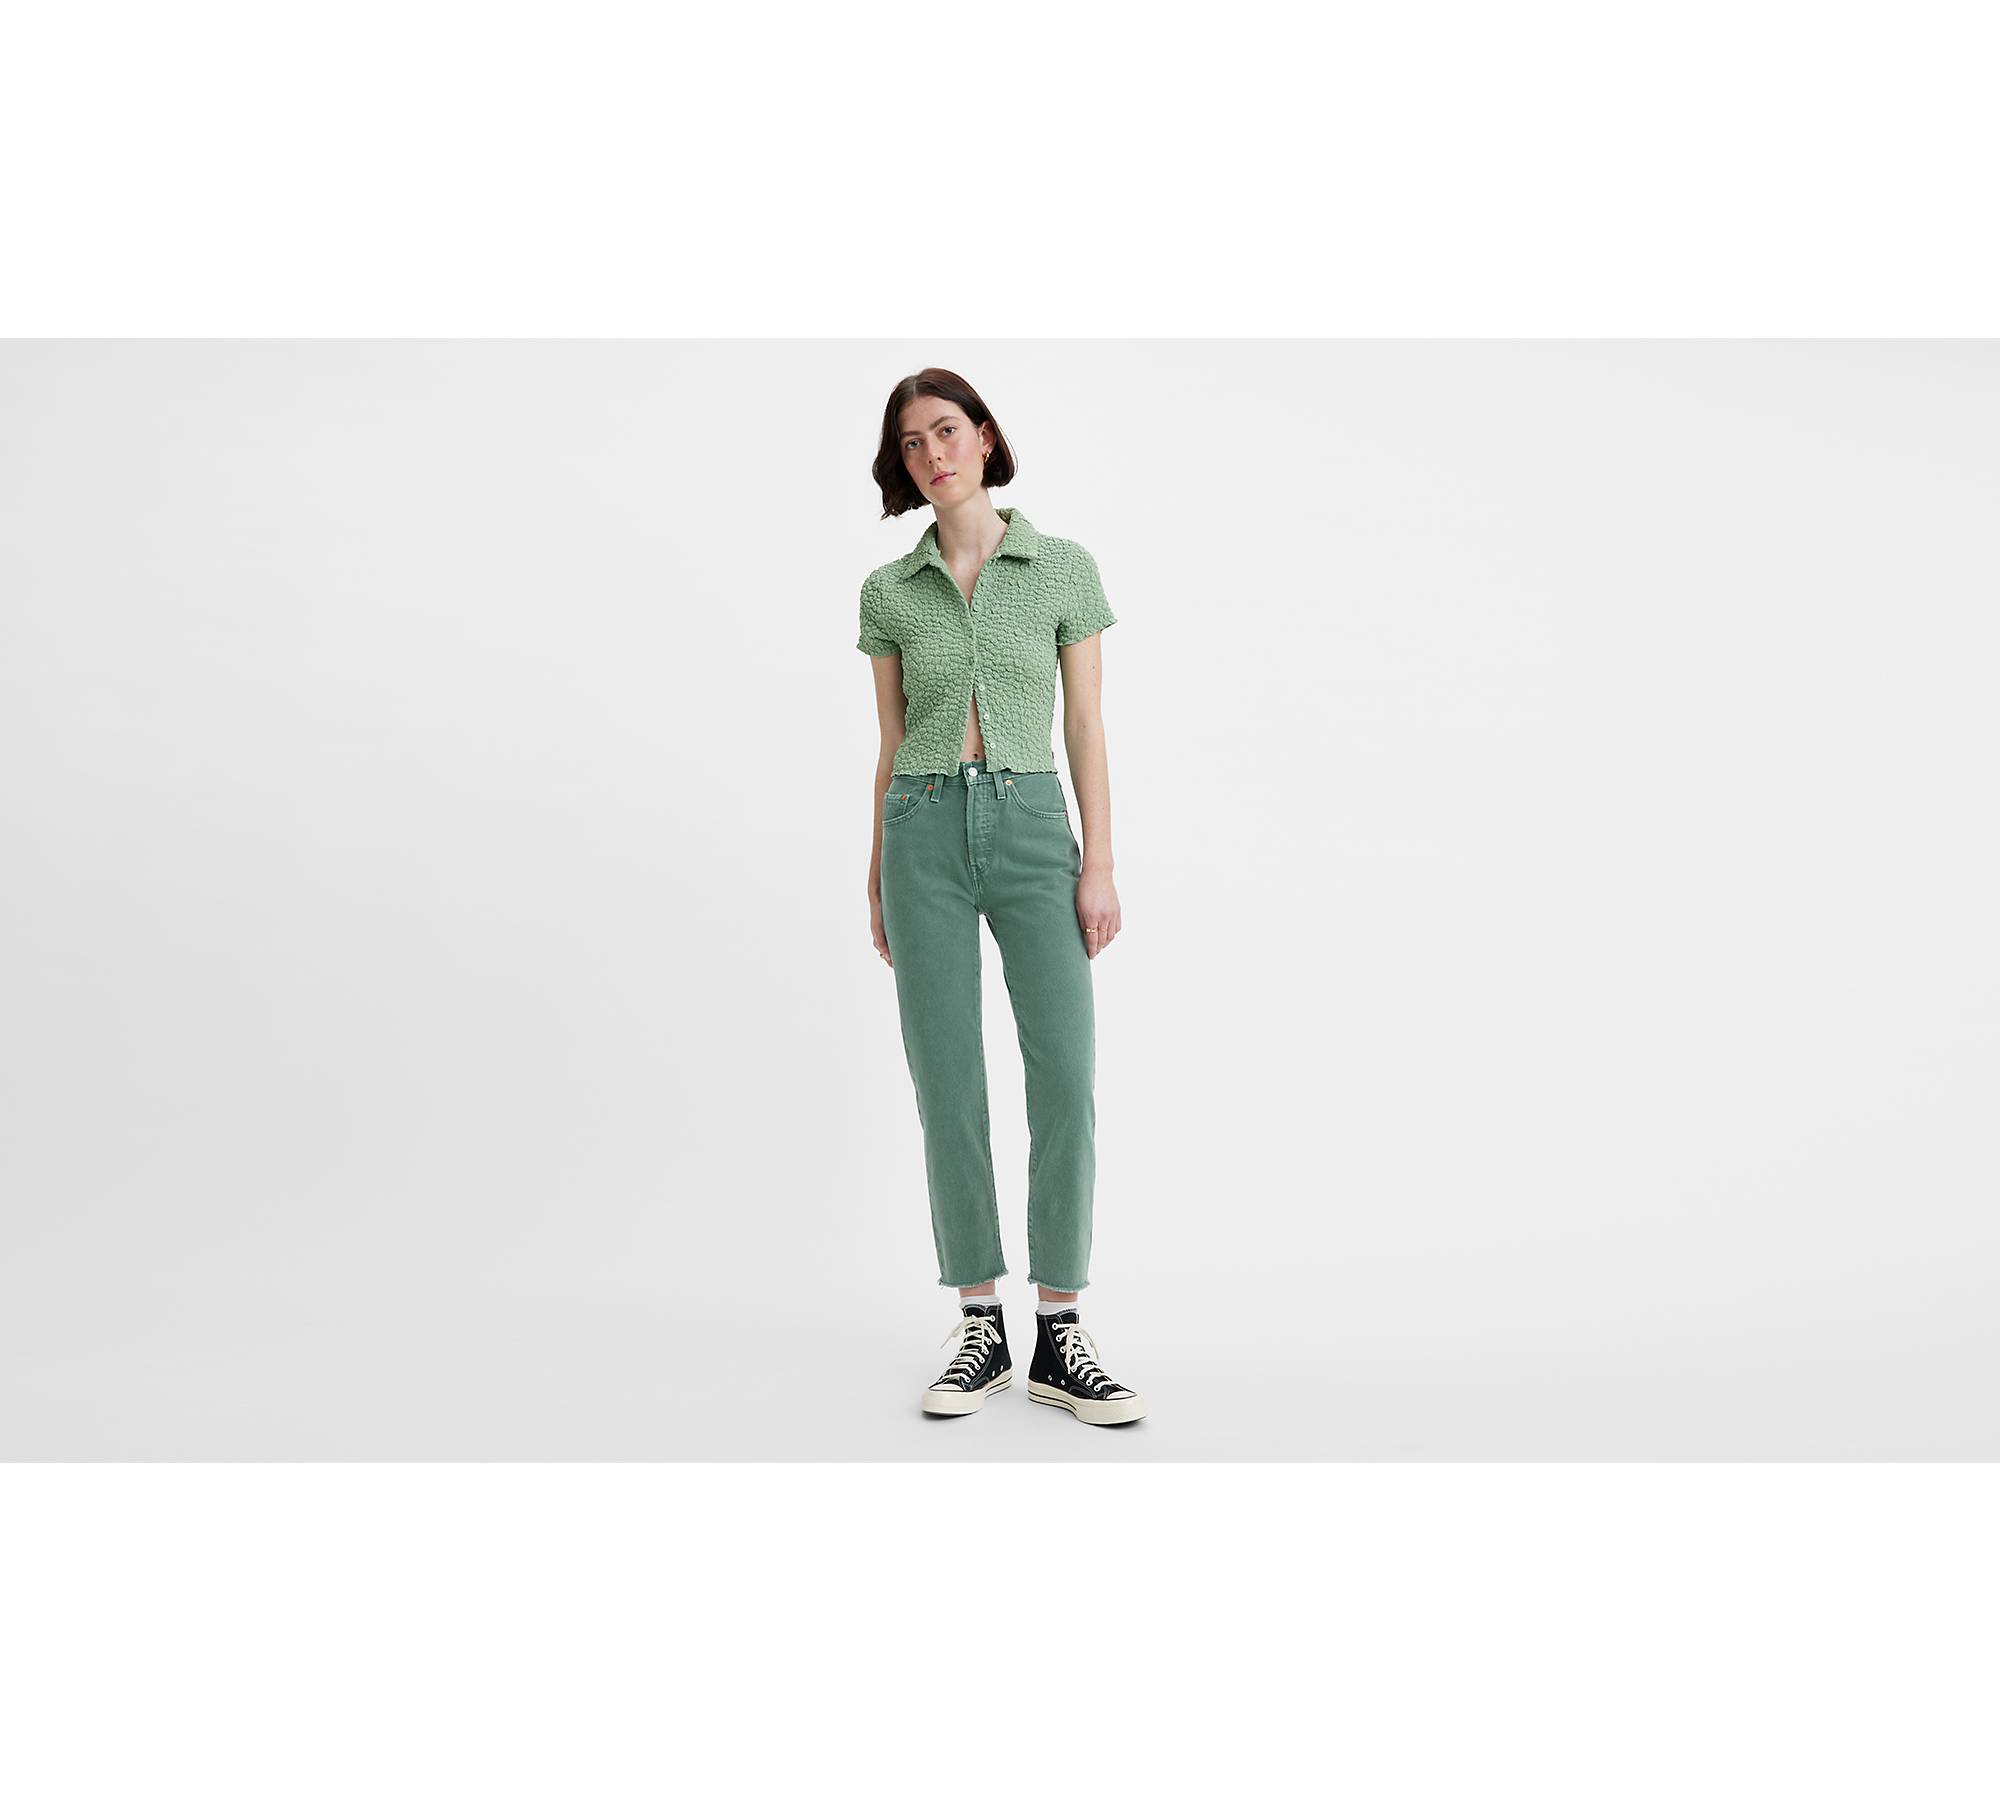 Athleta green stretch jean style cropped capri pants size 10